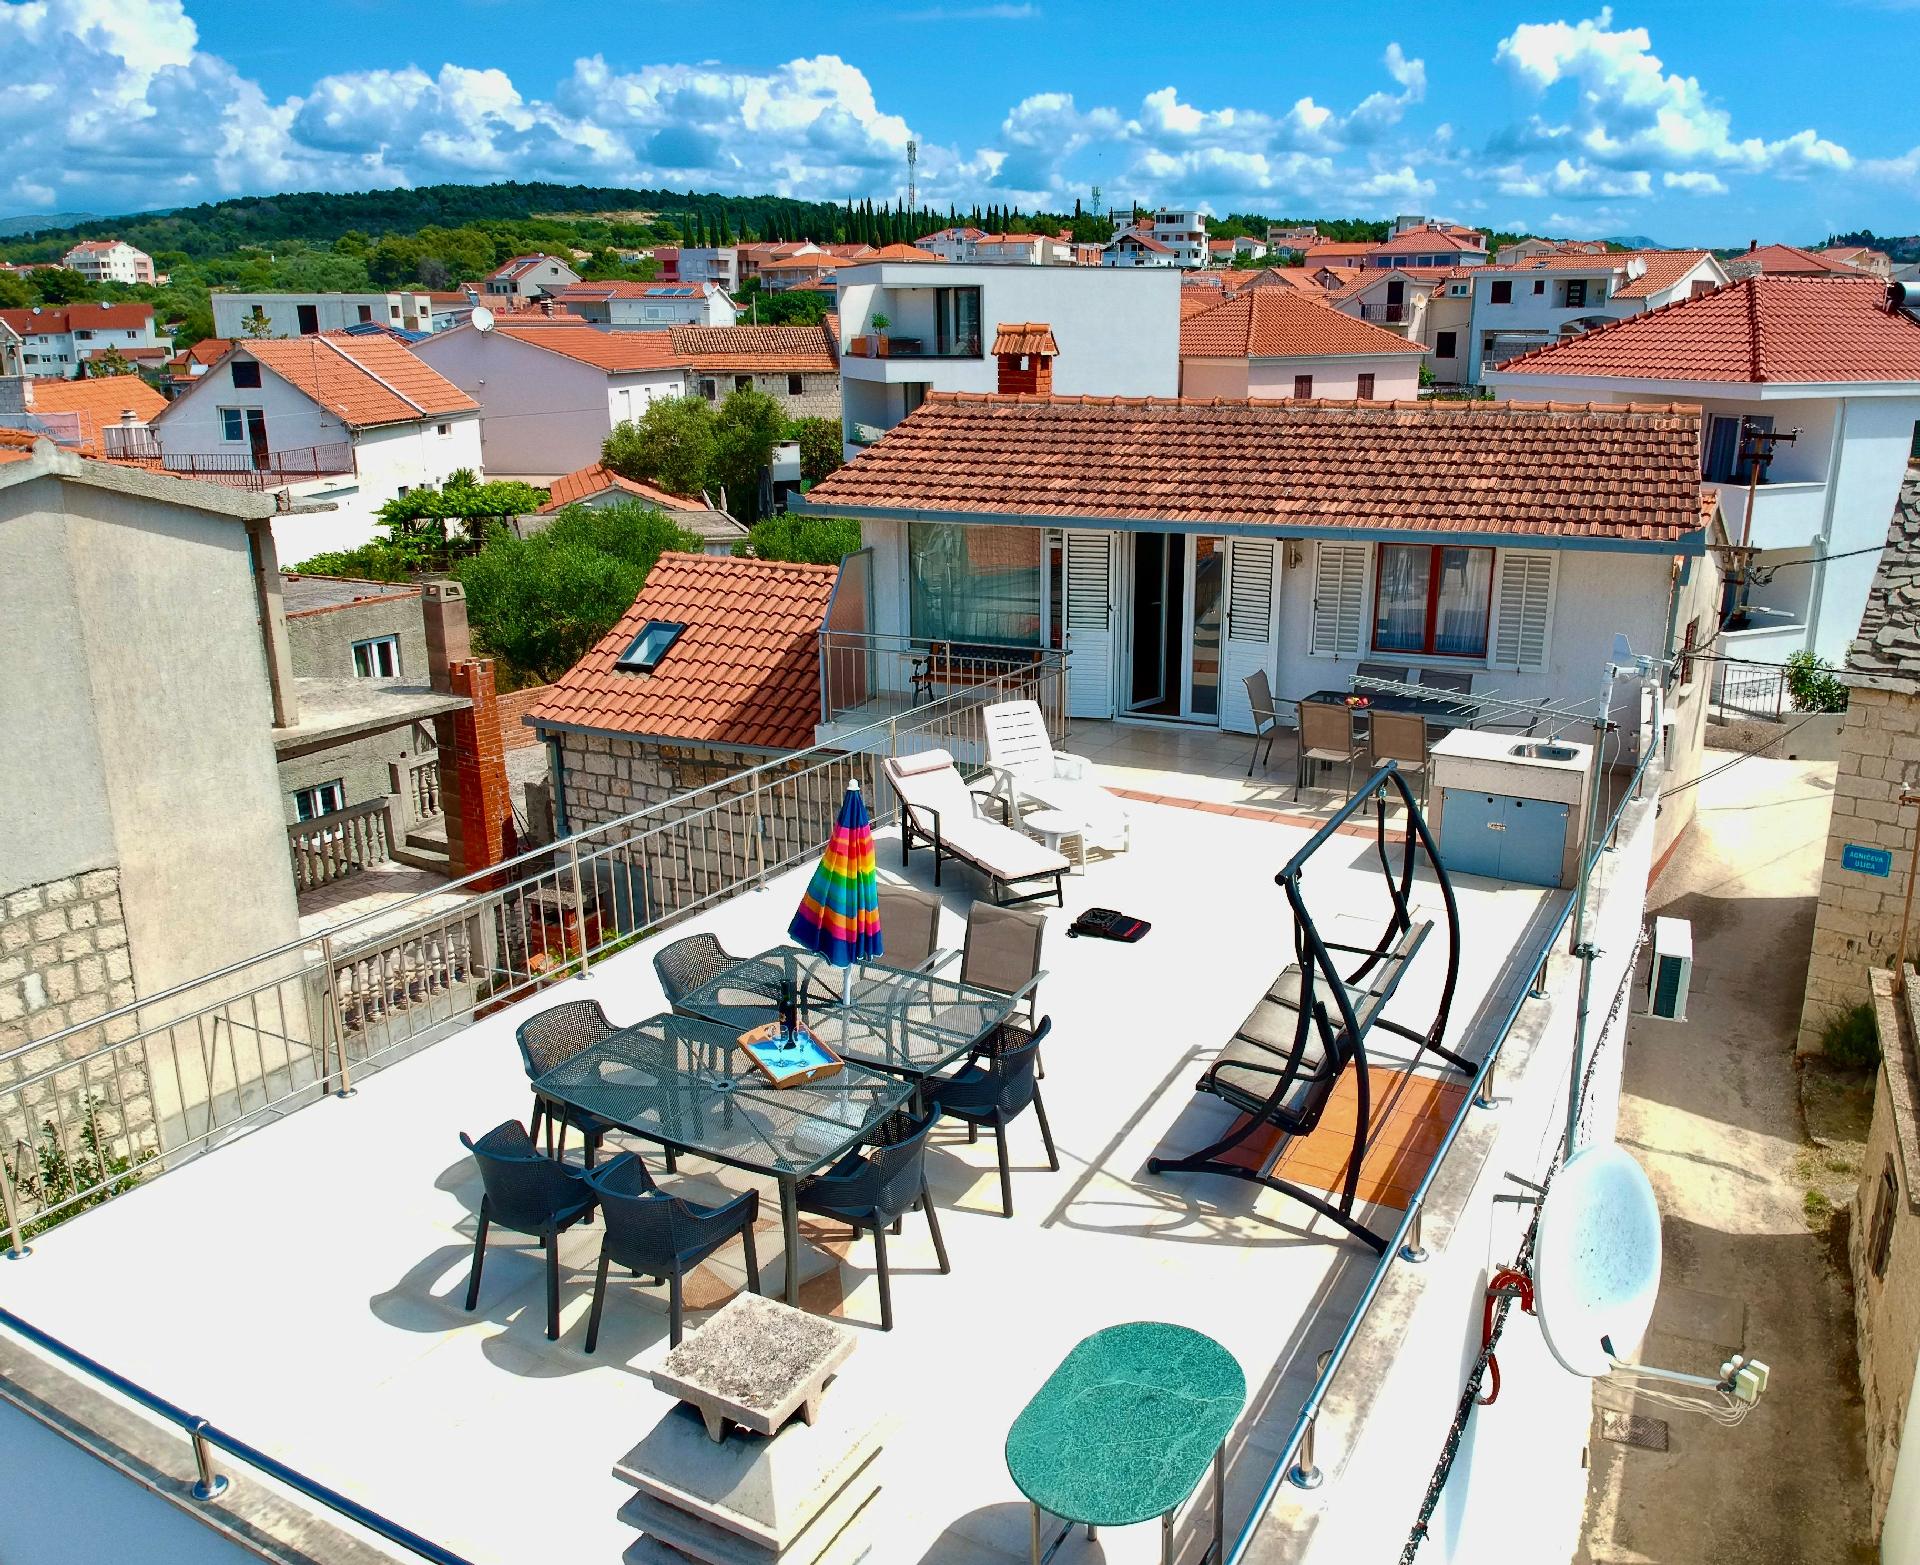 Tolles Appartement in Okrug Gornji mit Grill, Terr Ferienwohnung in Kroatien